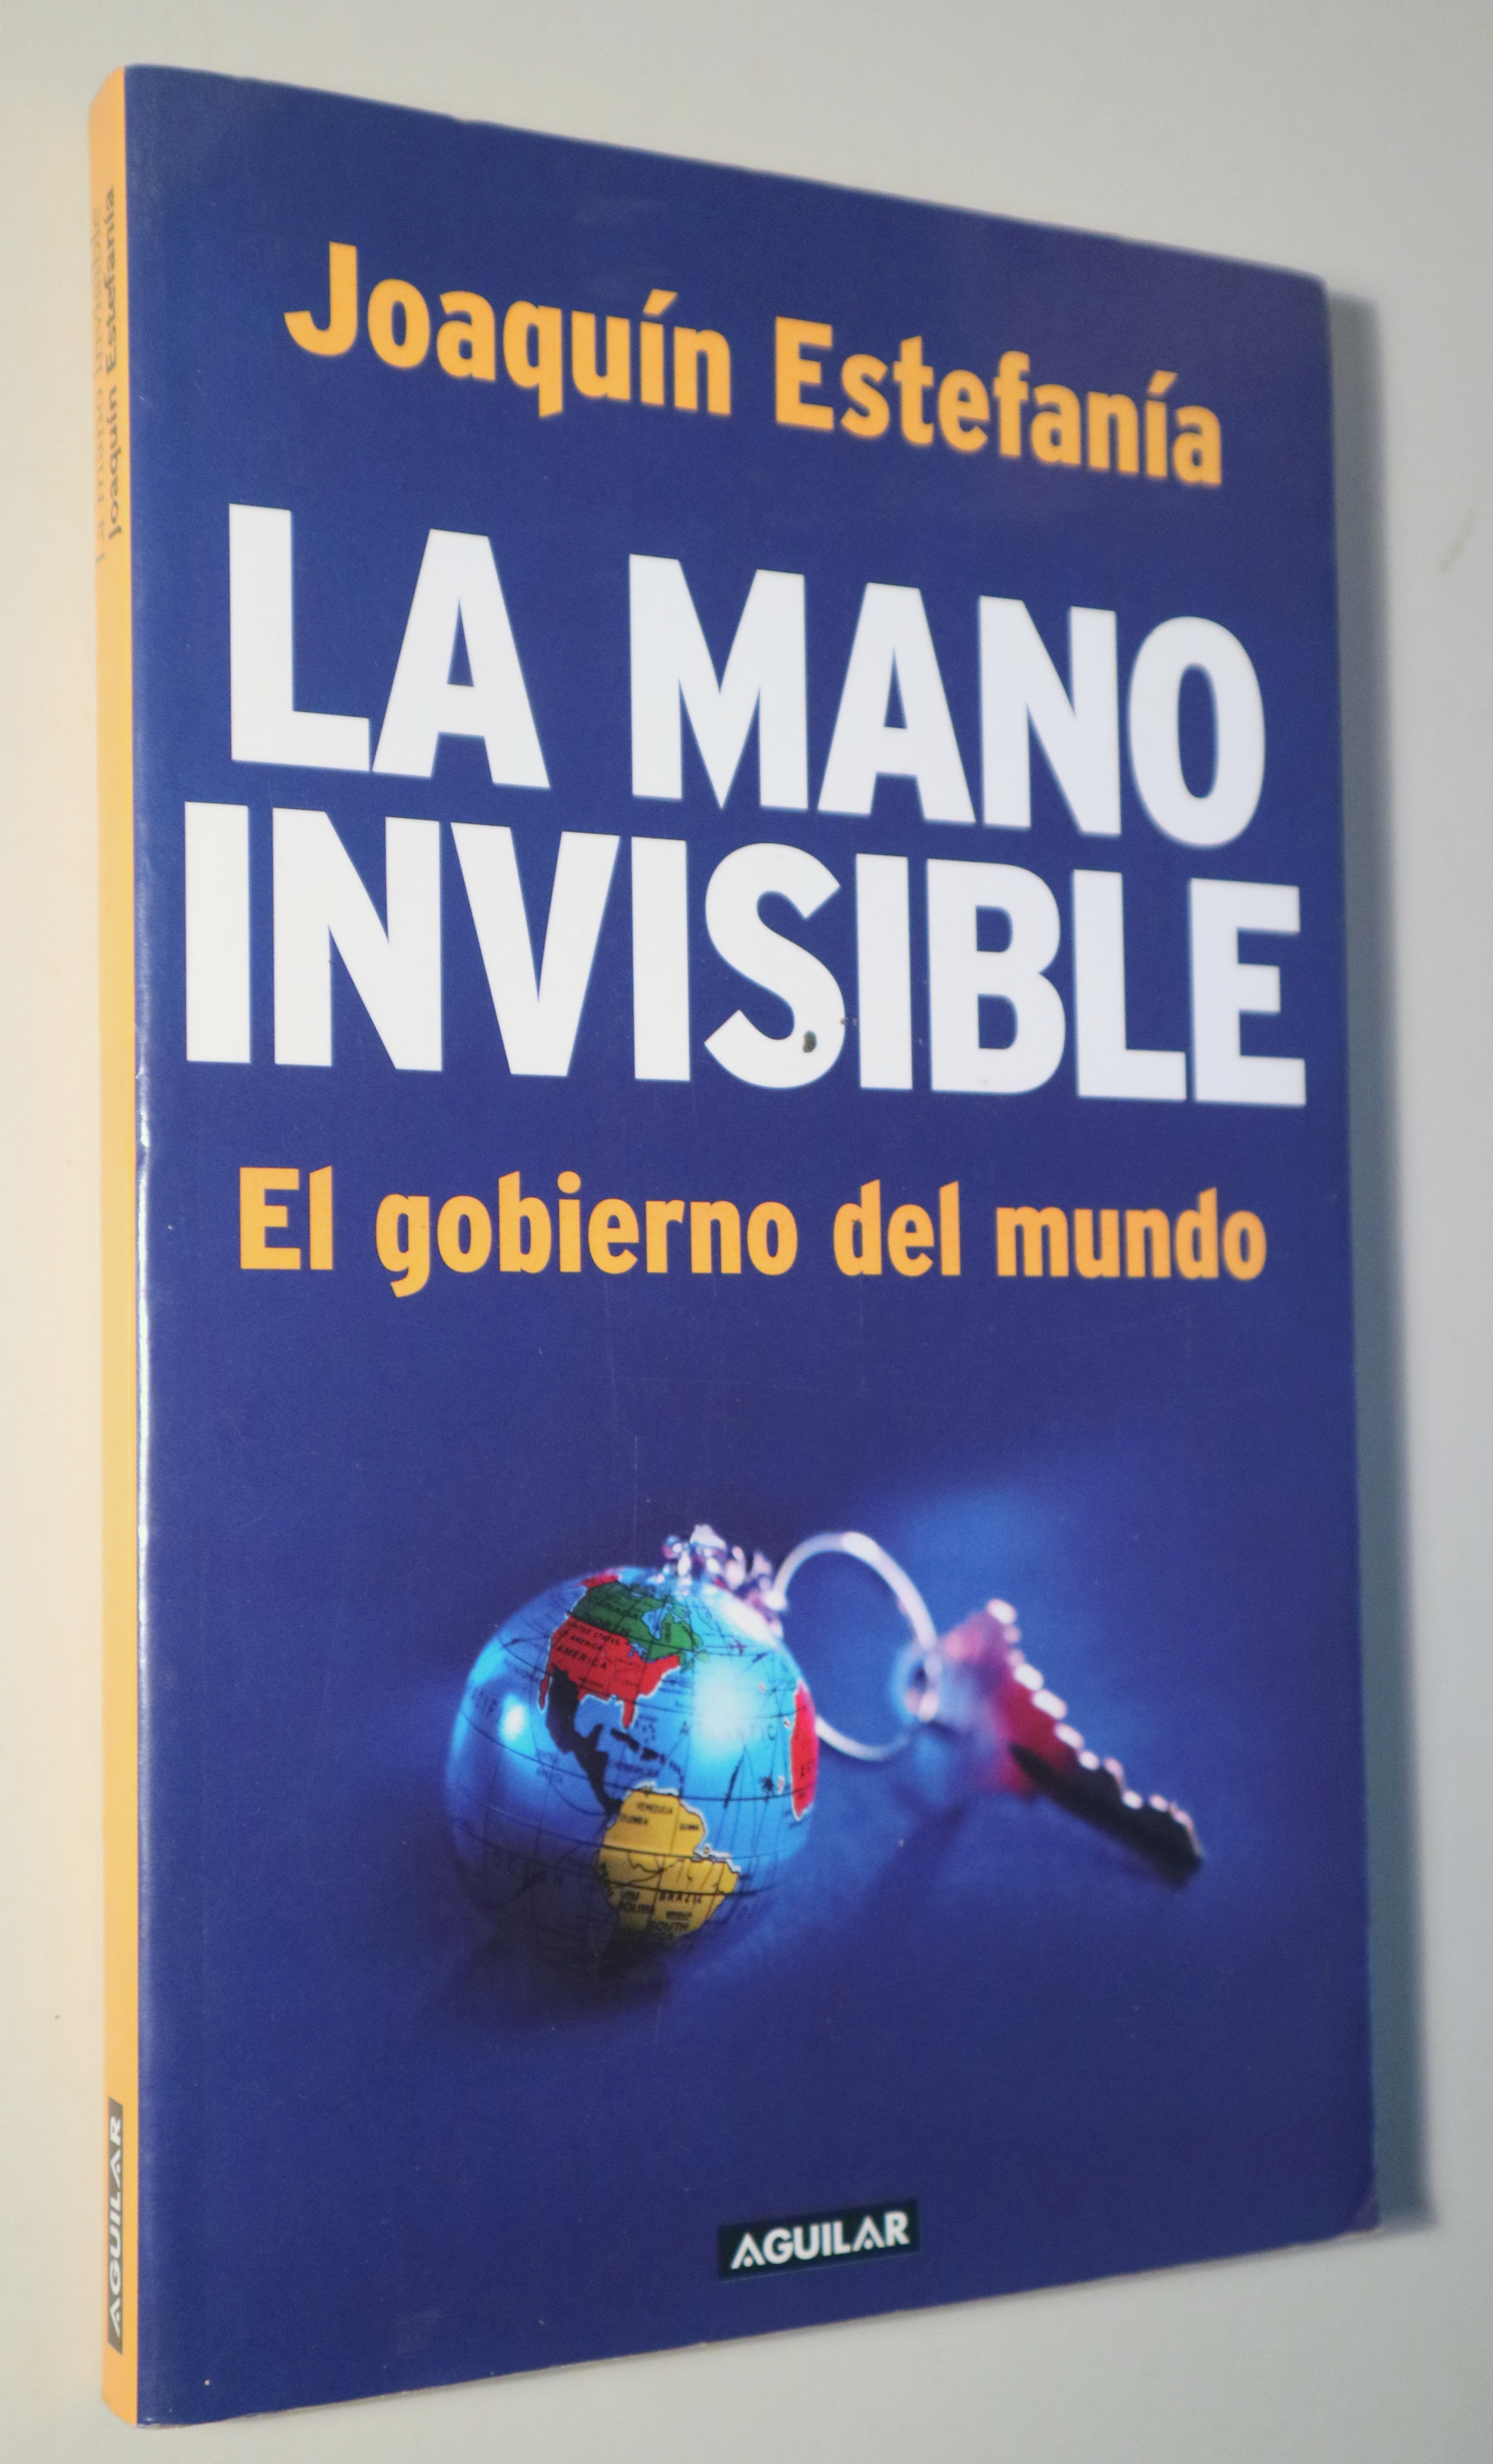 LA MANO INVISIBLE. El gobierno del mundo - Madrid 2006